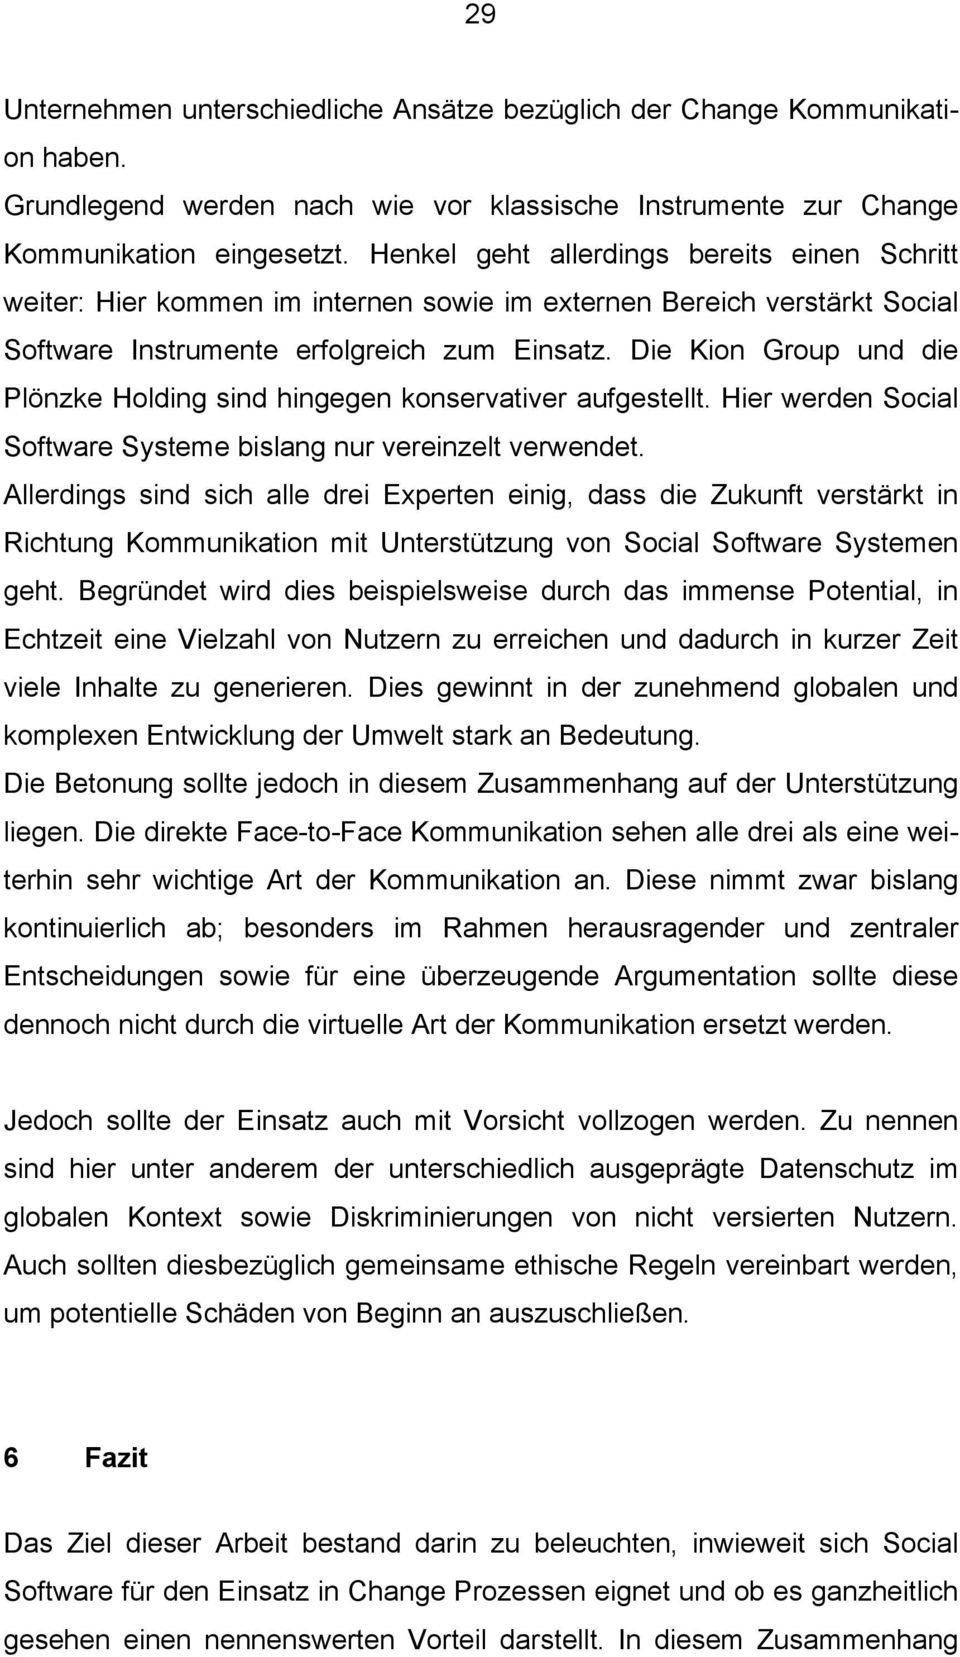 Die Kion Group und die Plönzke Holding sind hingegen konservativer aufgestellt. Hier werden Social Software Systeme bislang nur vereinzelt verwendet.